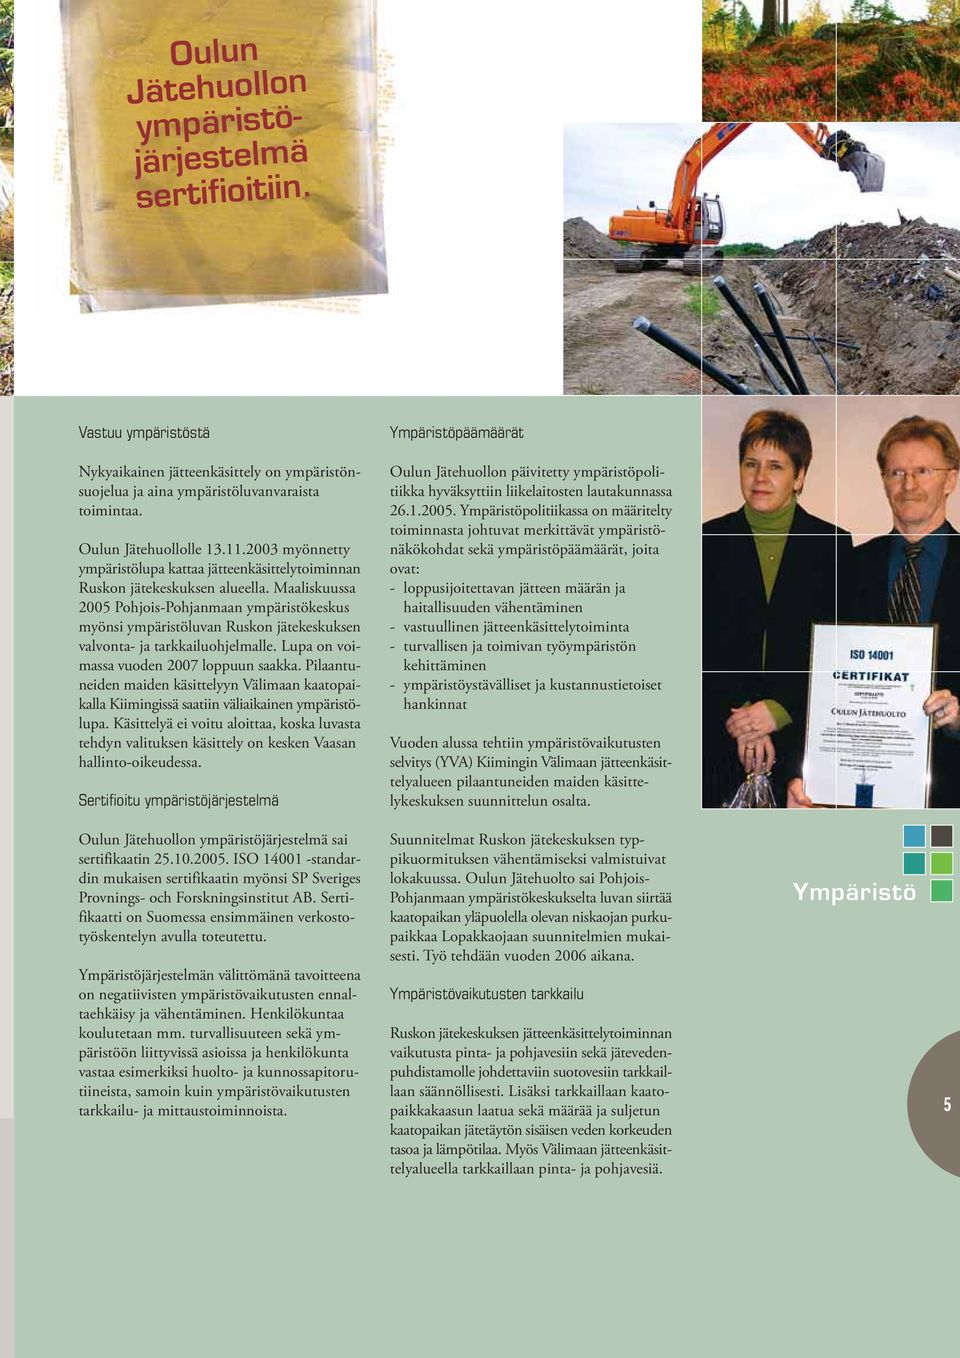 Maaliskuussa 2005 Pohjois-Pohjanmaan ympäristökeskus myönsi ympäristöluvan Ruskon jätekeskuksen valvonta- ja tarkkailuohjelmalle. Lupa on voimassa vuoden 2007 loppuun saakka.